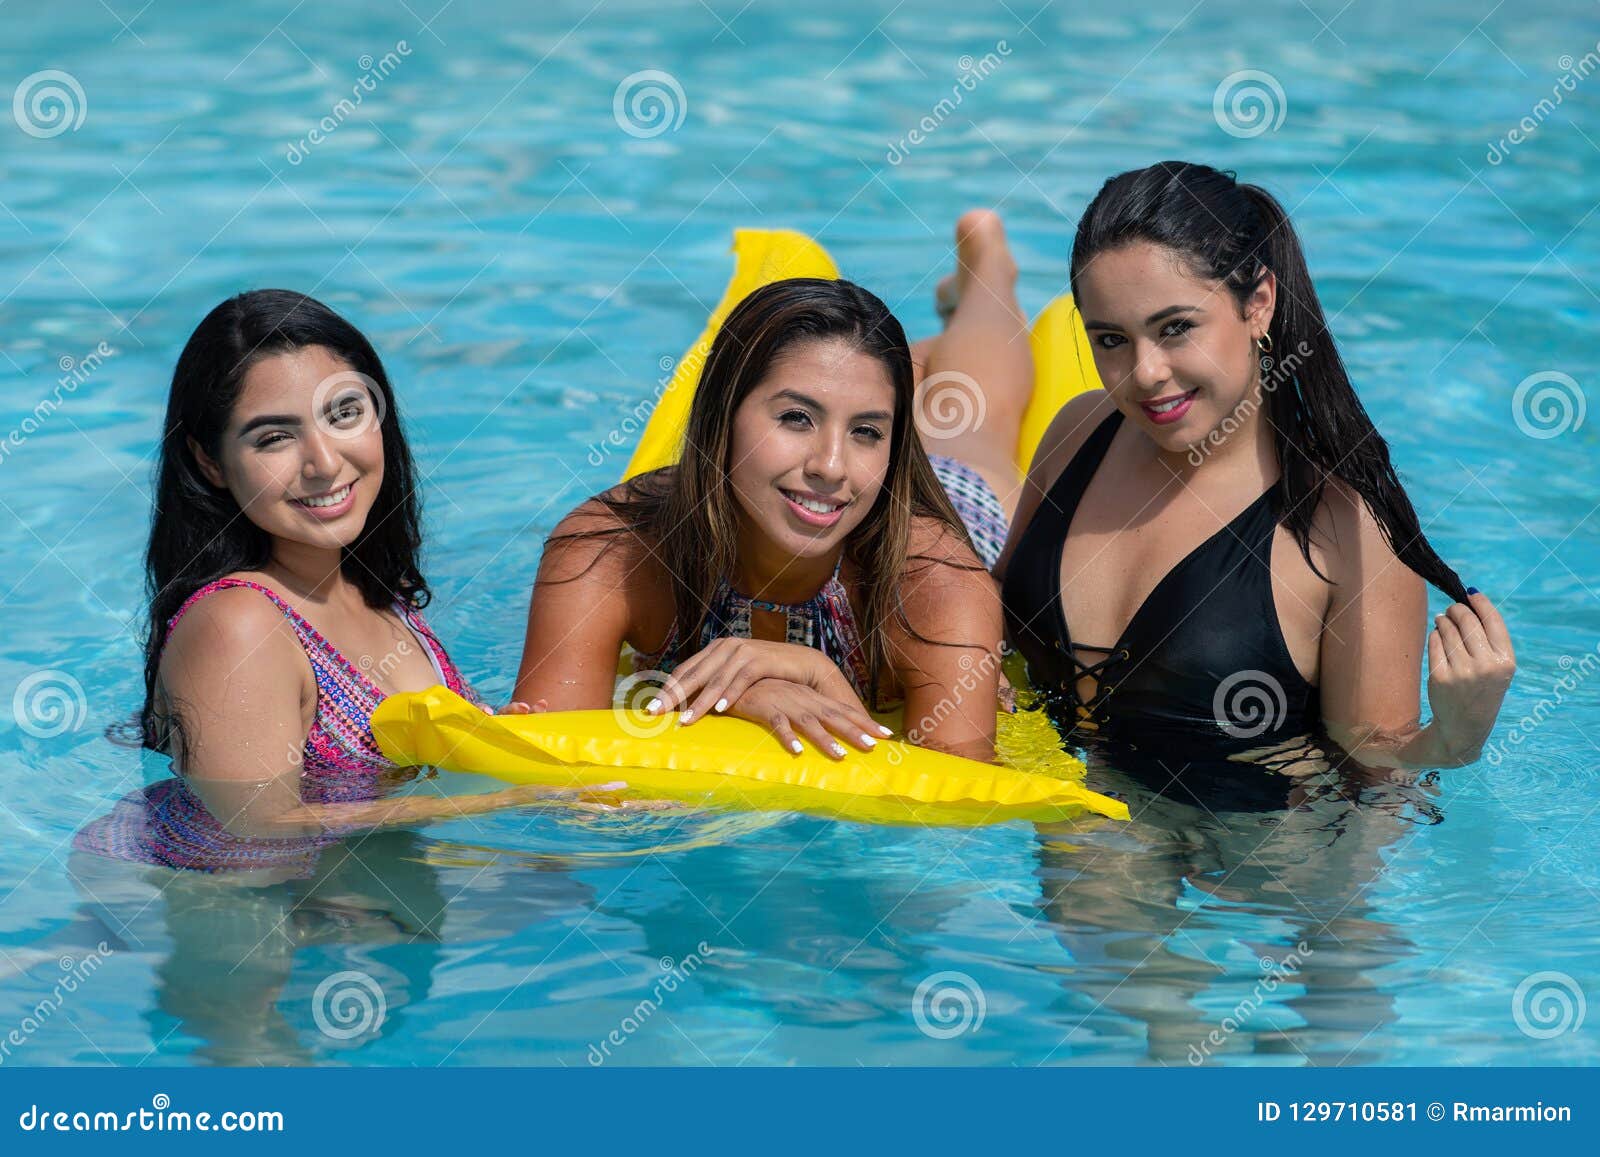 pool party girl selfie